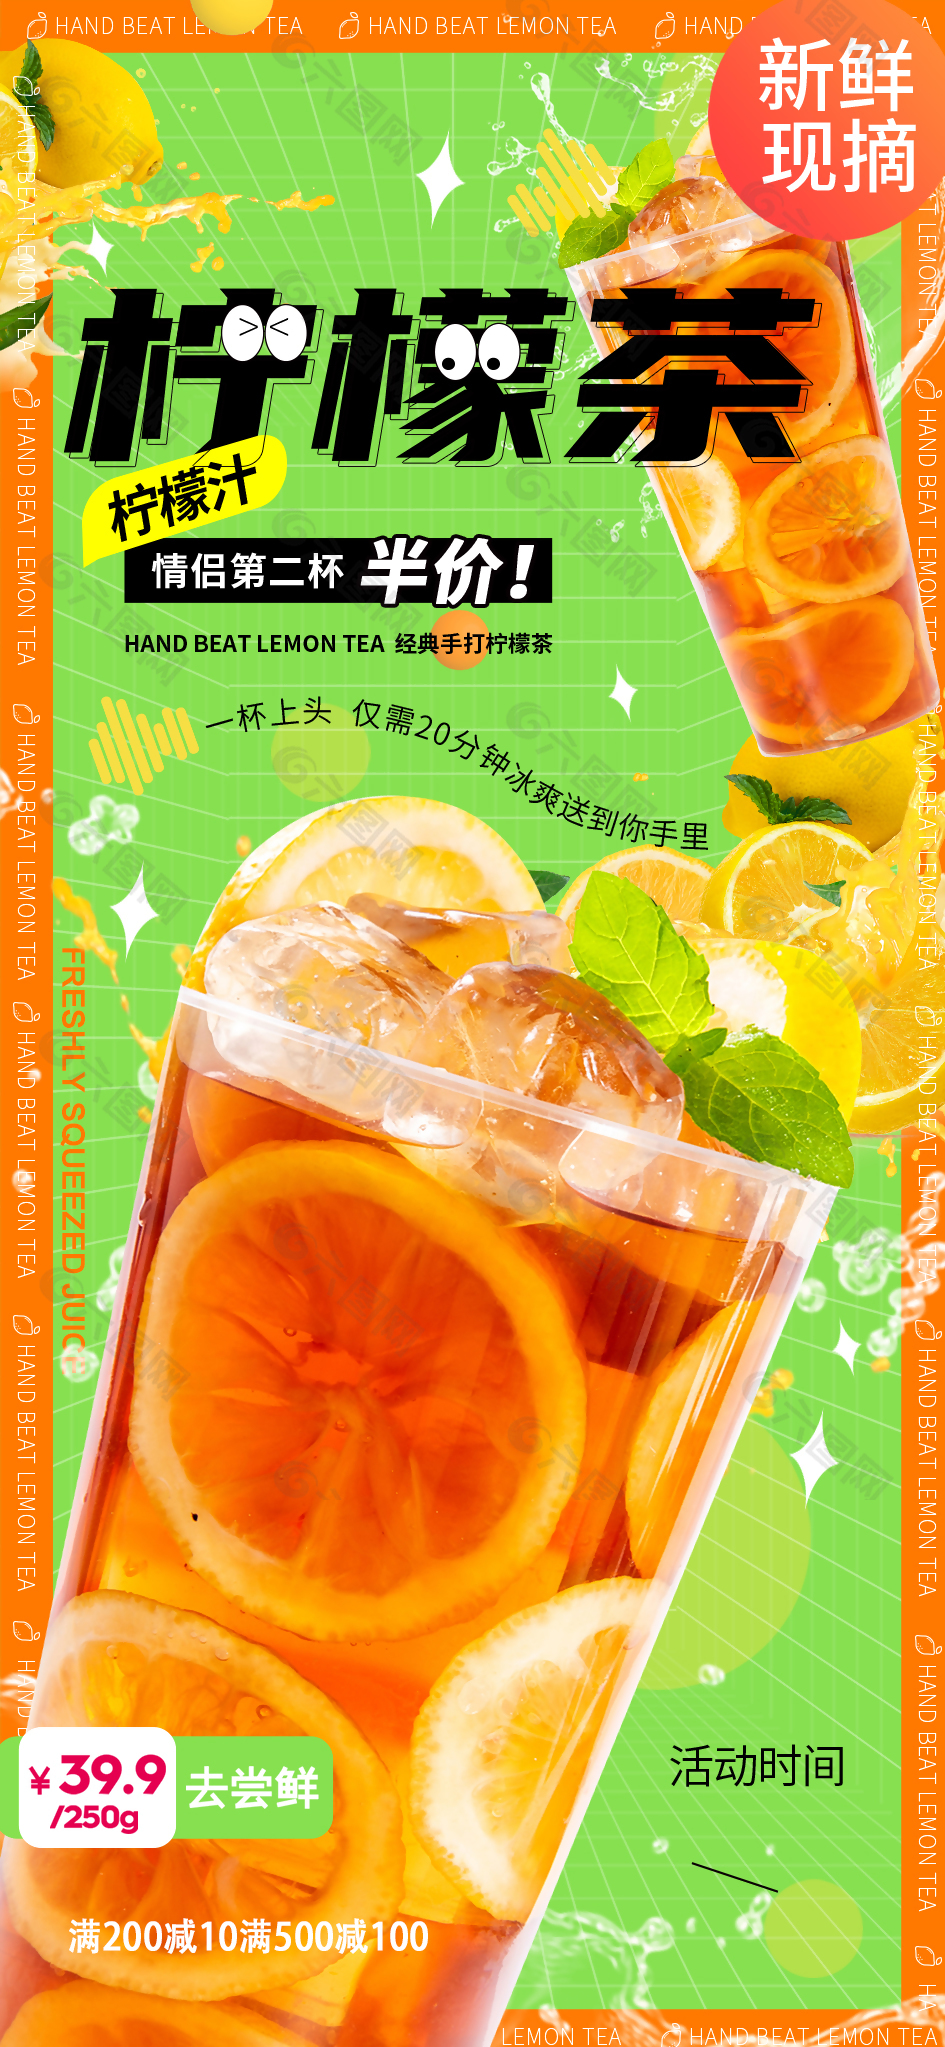 新鲜鲜榨柠檬茶创意活动推广海报设计